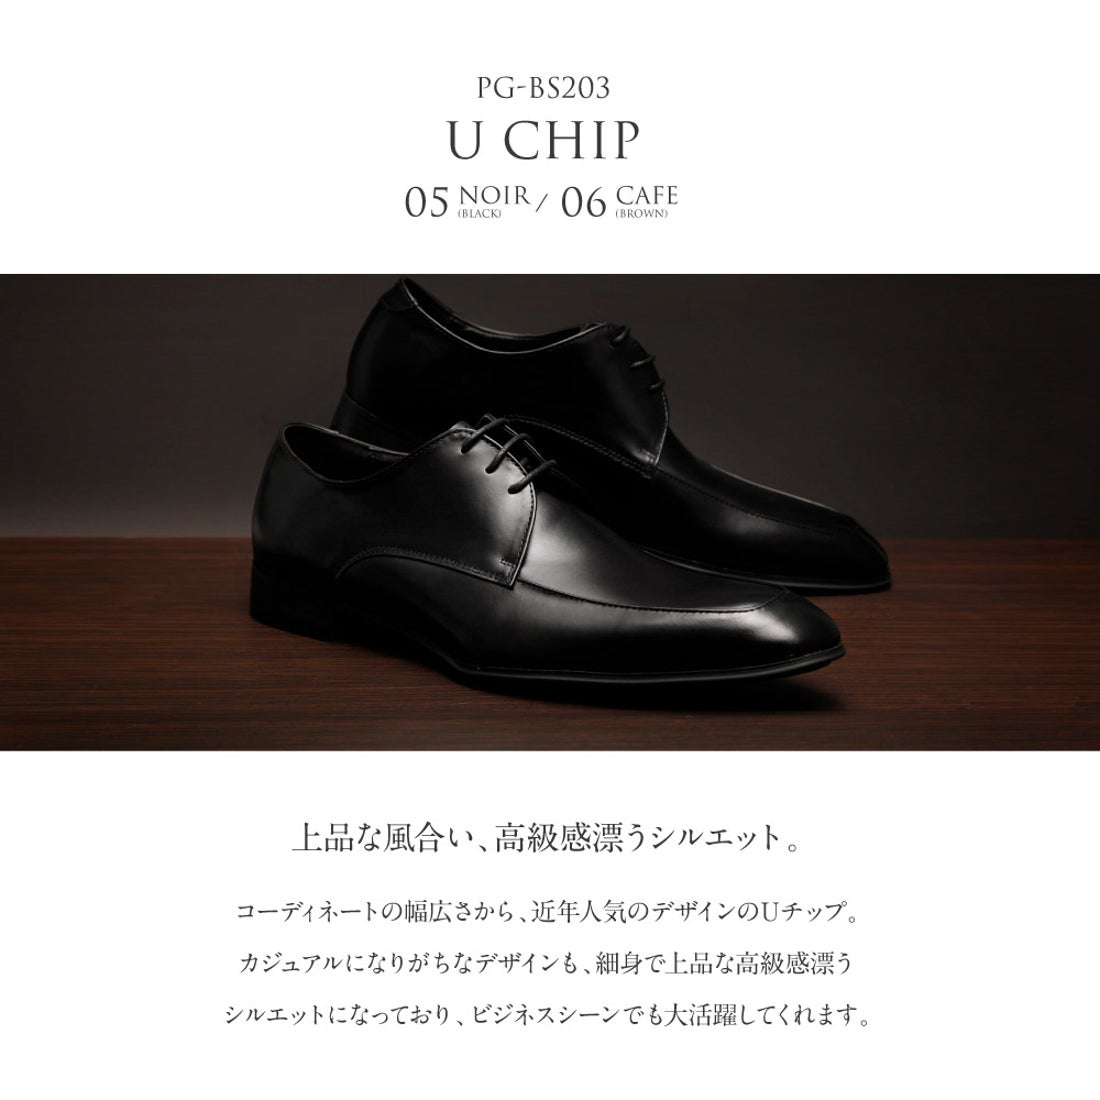 ギオネ GUIONNET ビジネスシューズ メンズ 革靴 日本製 メンズビジネス